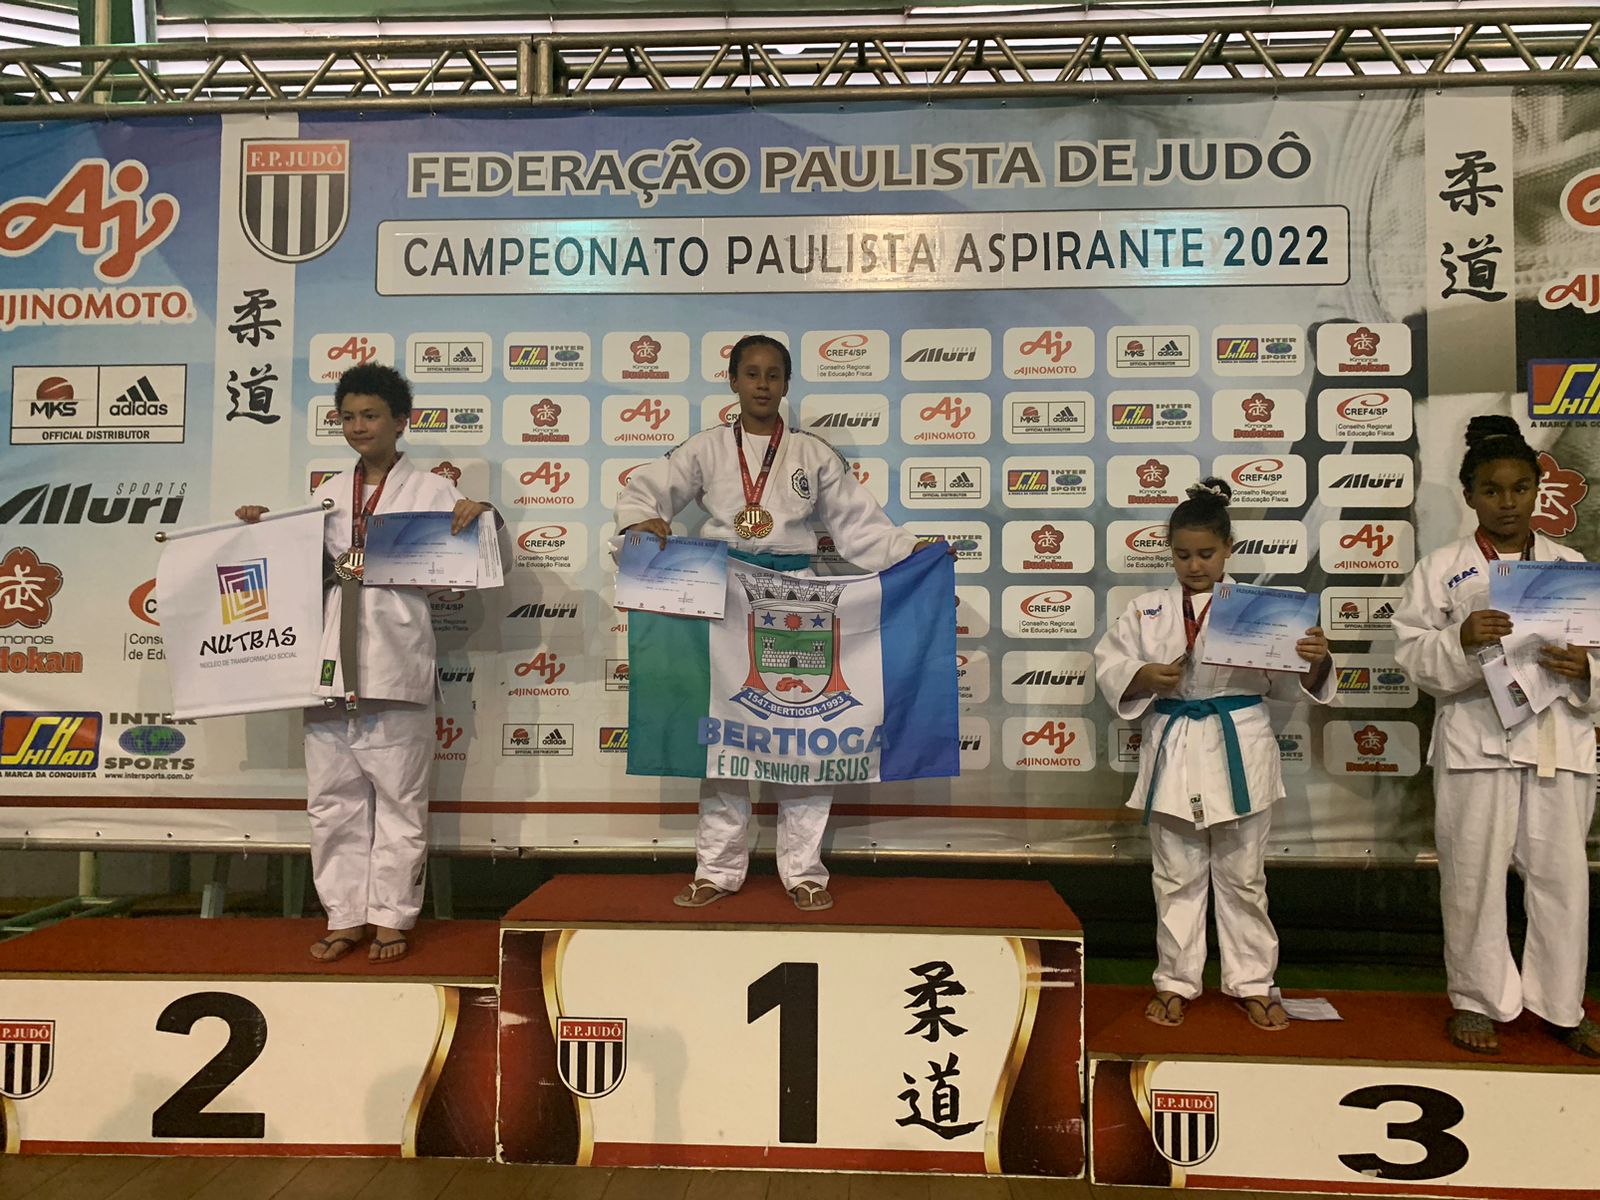 Judoca bertioguense é ouro no Campeonato Paulista de Judô